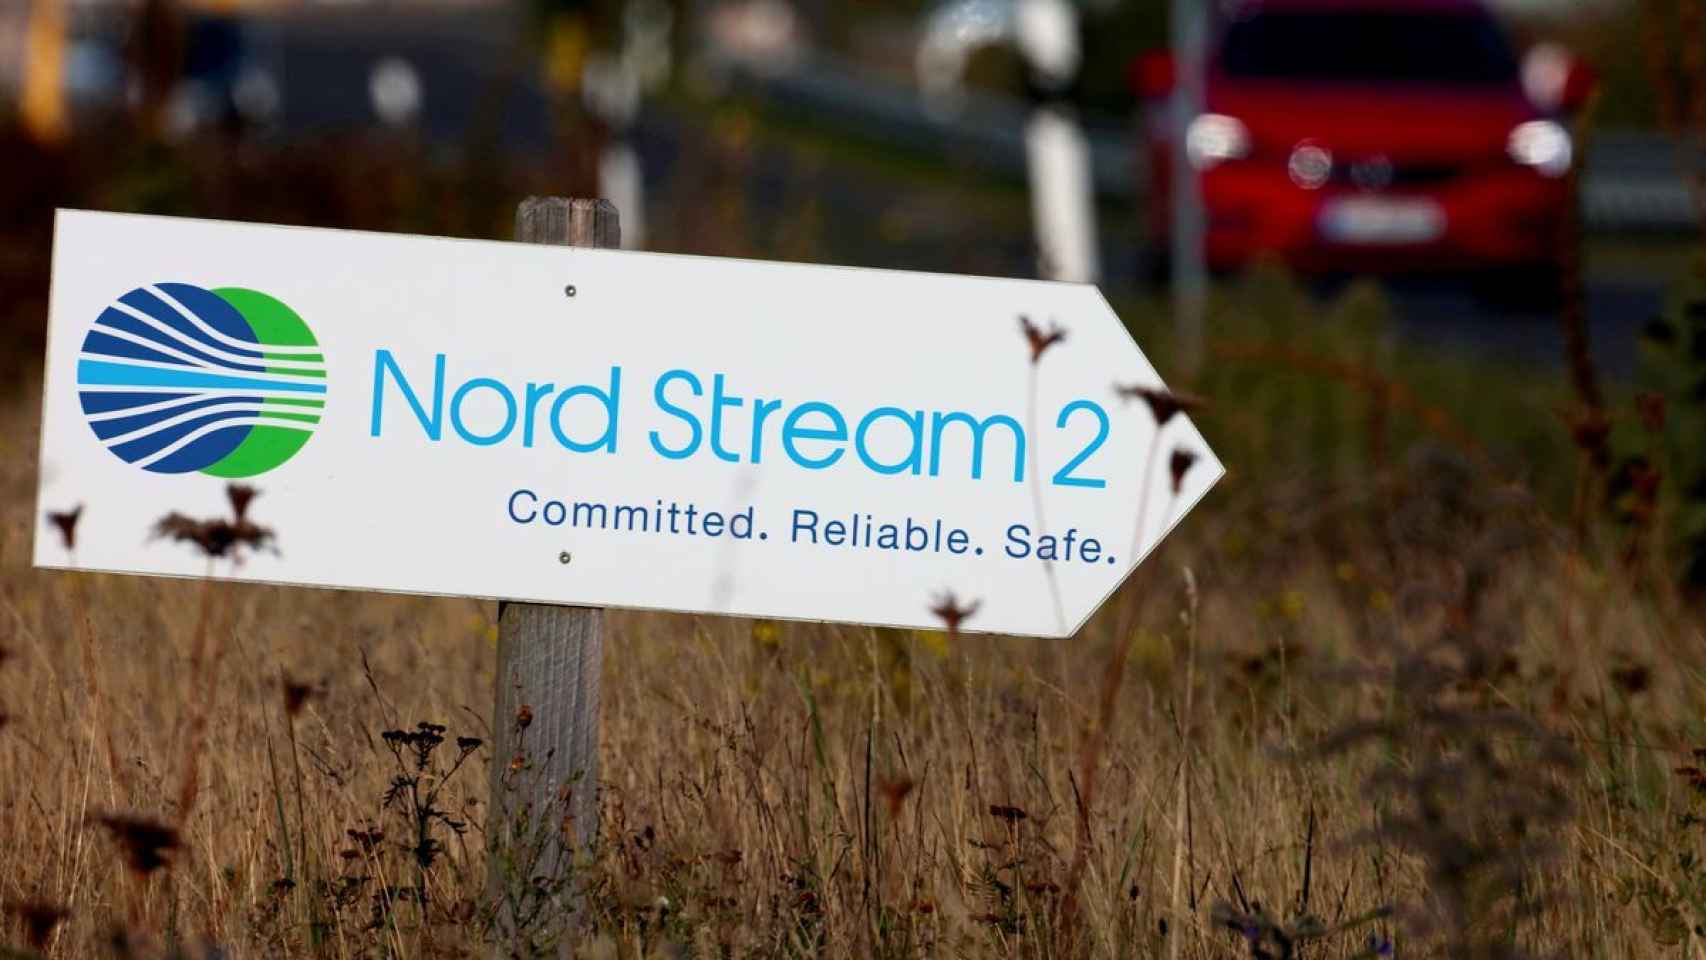 Señal del Nord Stream 2, el proyecto gasístico frustrado de Alemania y Rusia,